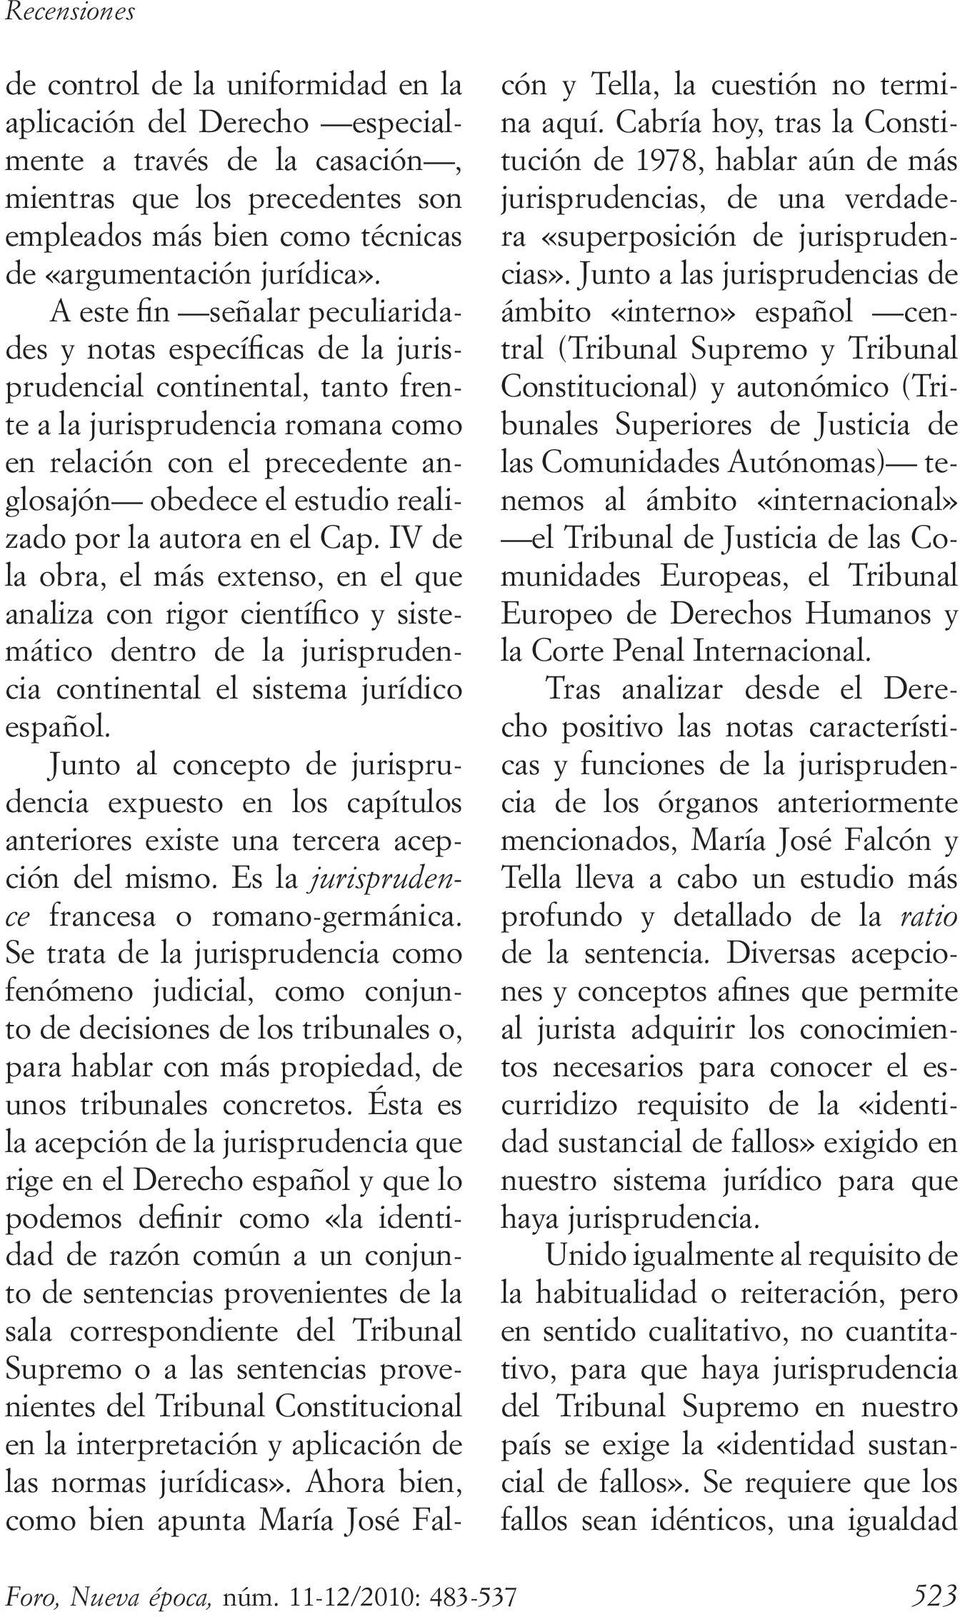 realizado por la autora en el Cap. IV de la obra, el más extenso, en el que analiza con rigor científico y sistemático dentro de la jurisprudencia continental el sistema jurídico español.